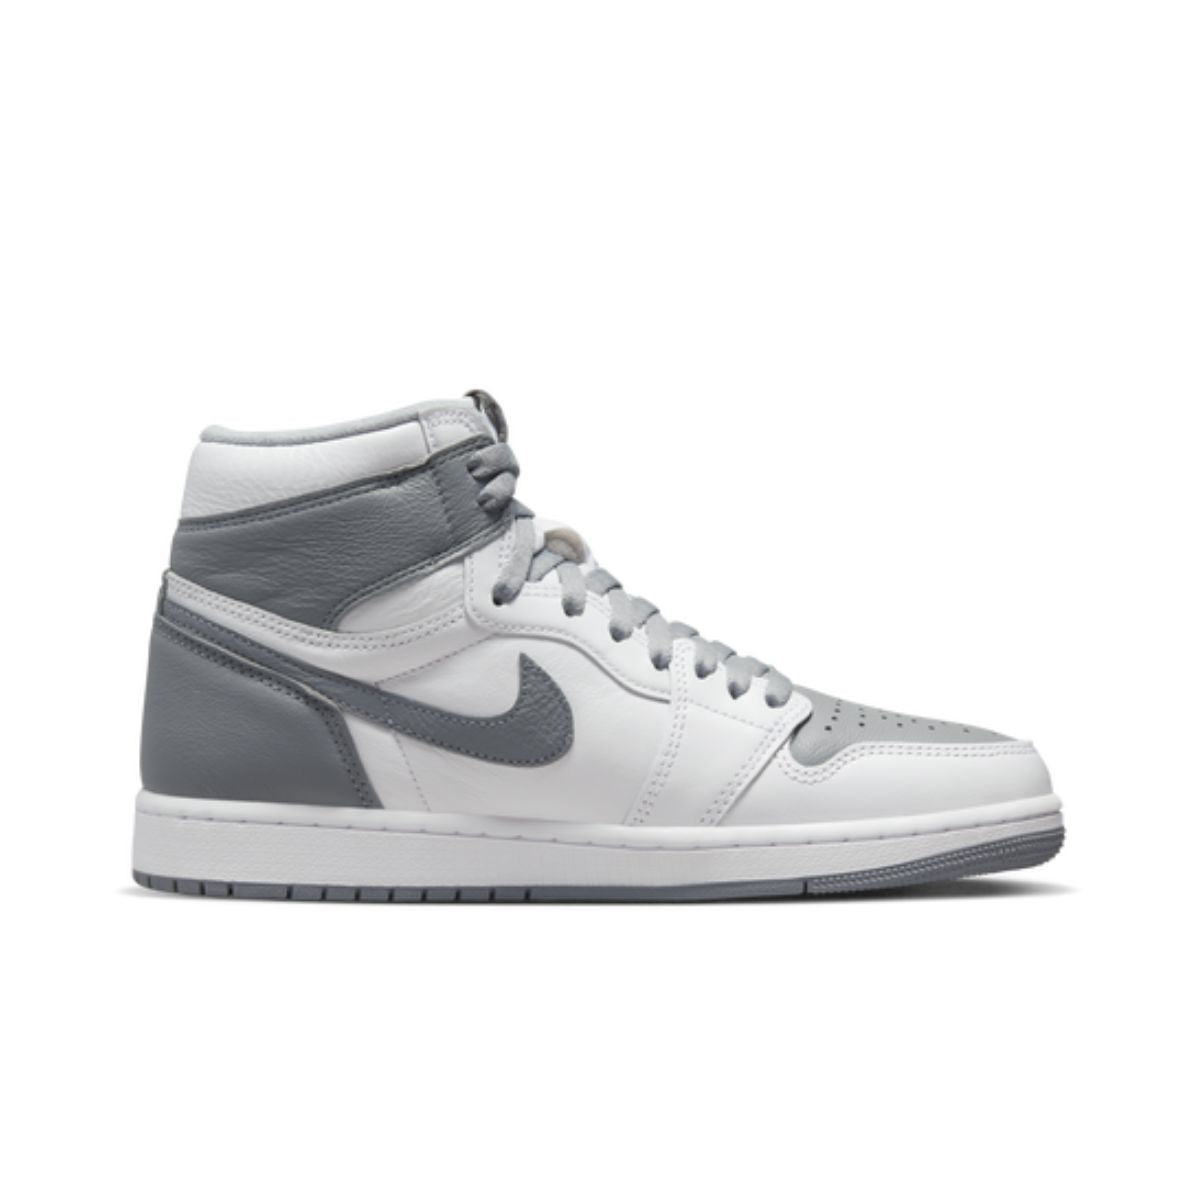 Grey Jordans Replacement Shoelaces - Kicks Shoelaces